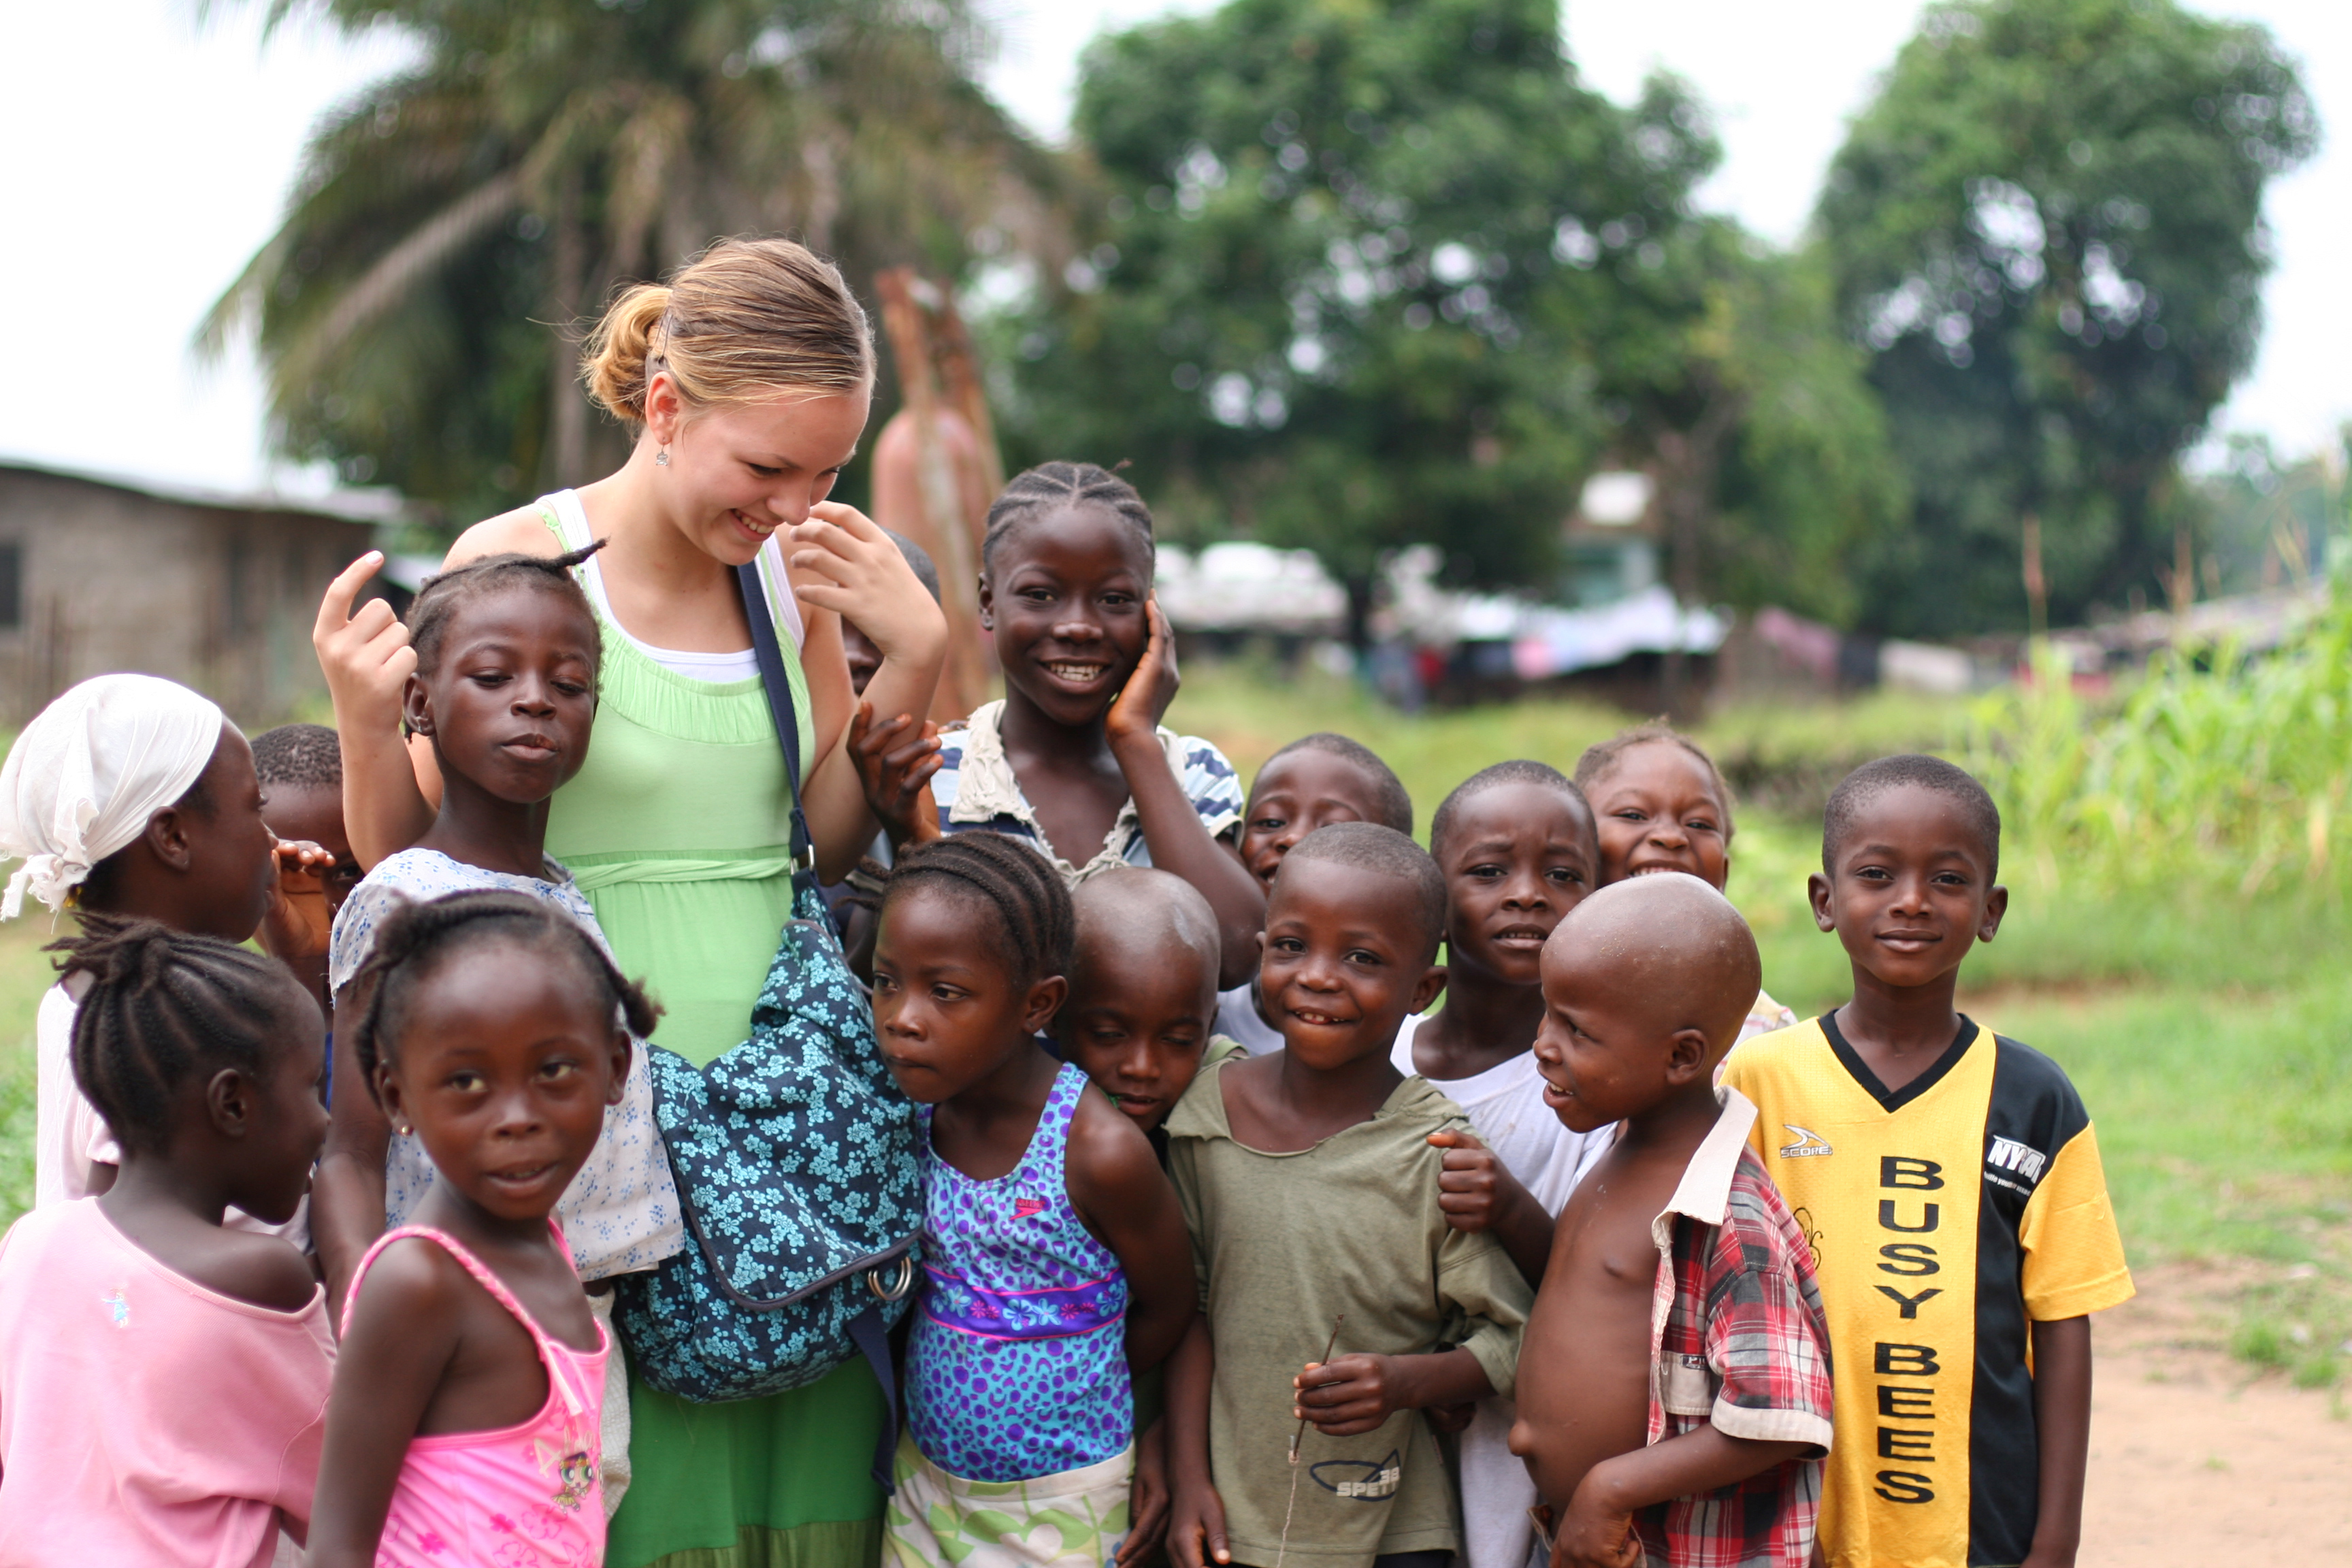 Voluntariado no estrangeiro: viajar marcando a diferença